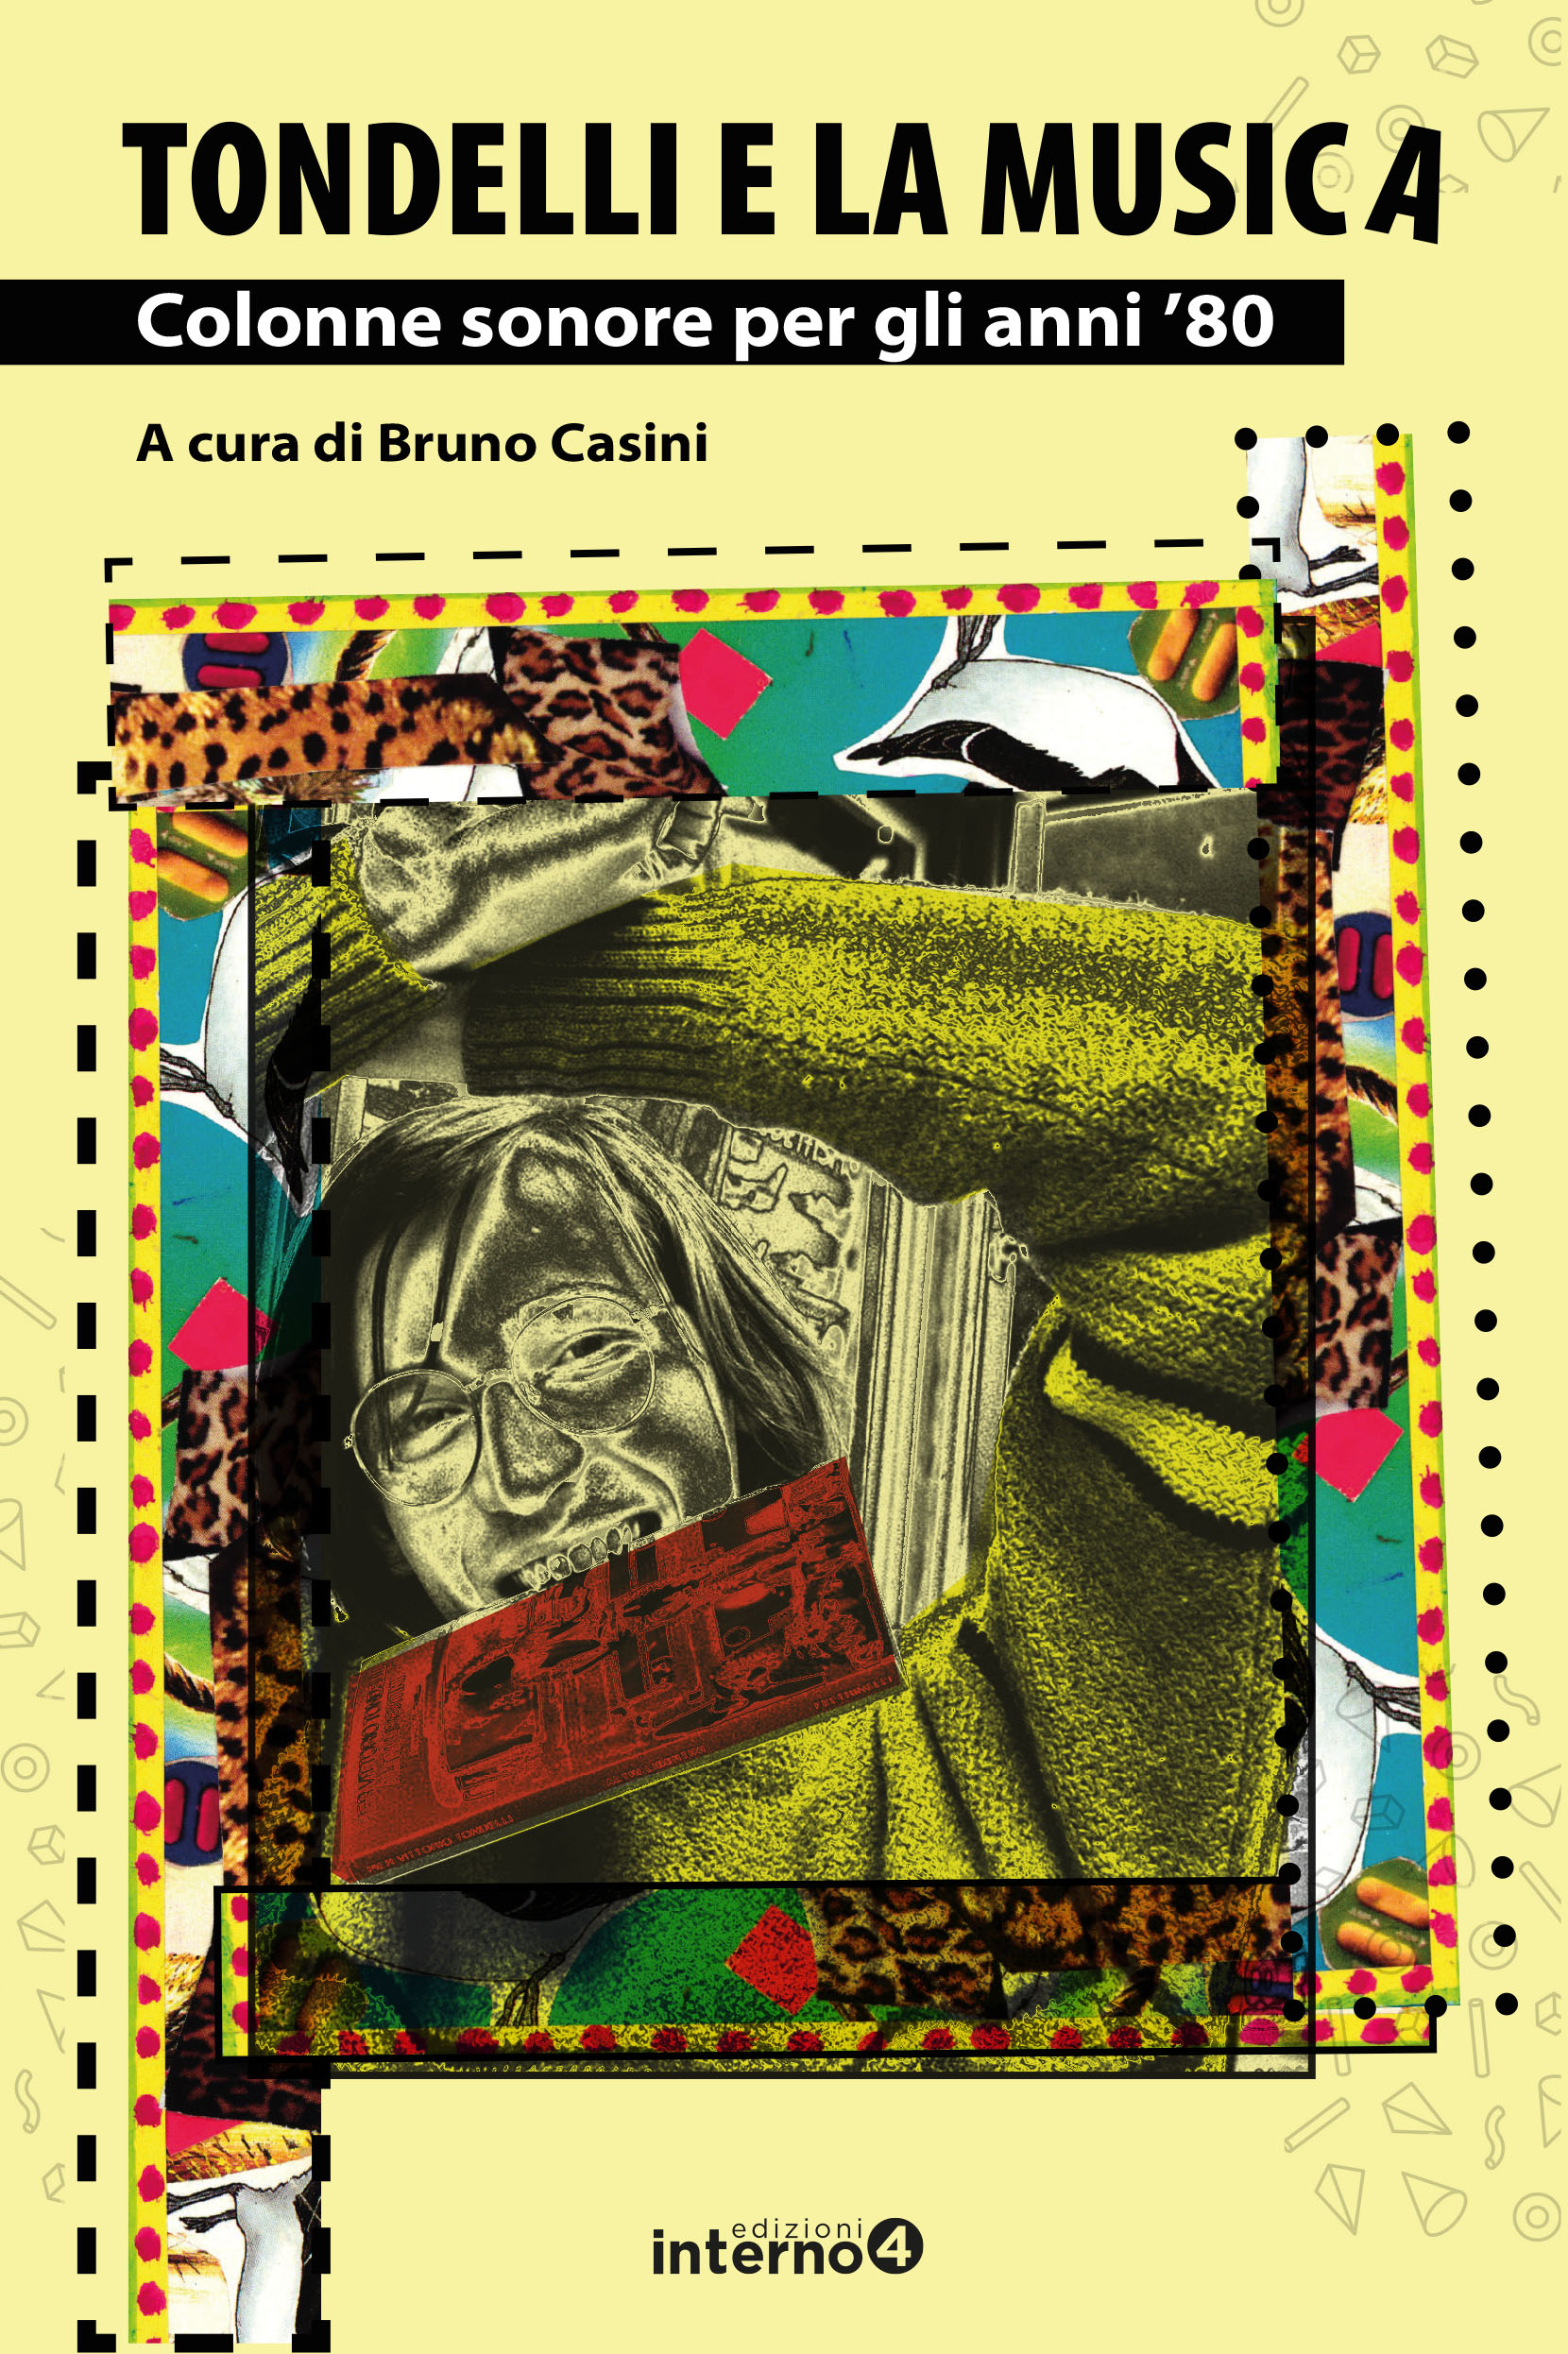 Tondelli e la musica – Bruno Casini presenta il libro alla Biblioteca Mario Luzi di Firenze – Sabato 27 Maggio 2023 ore 16.30.